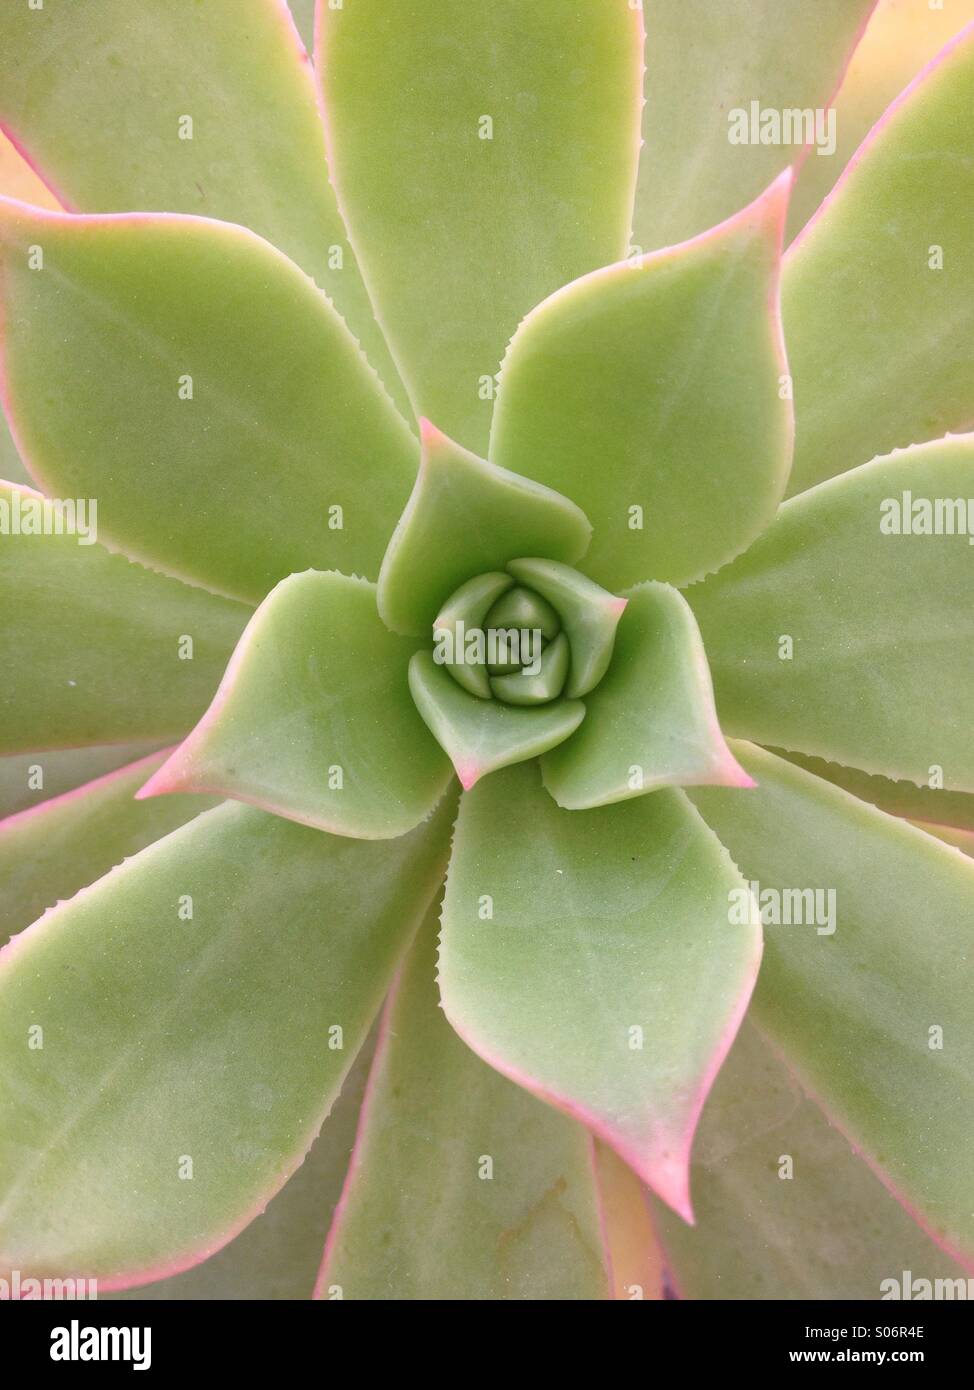 Aeonium percarneum plant Stock Photo